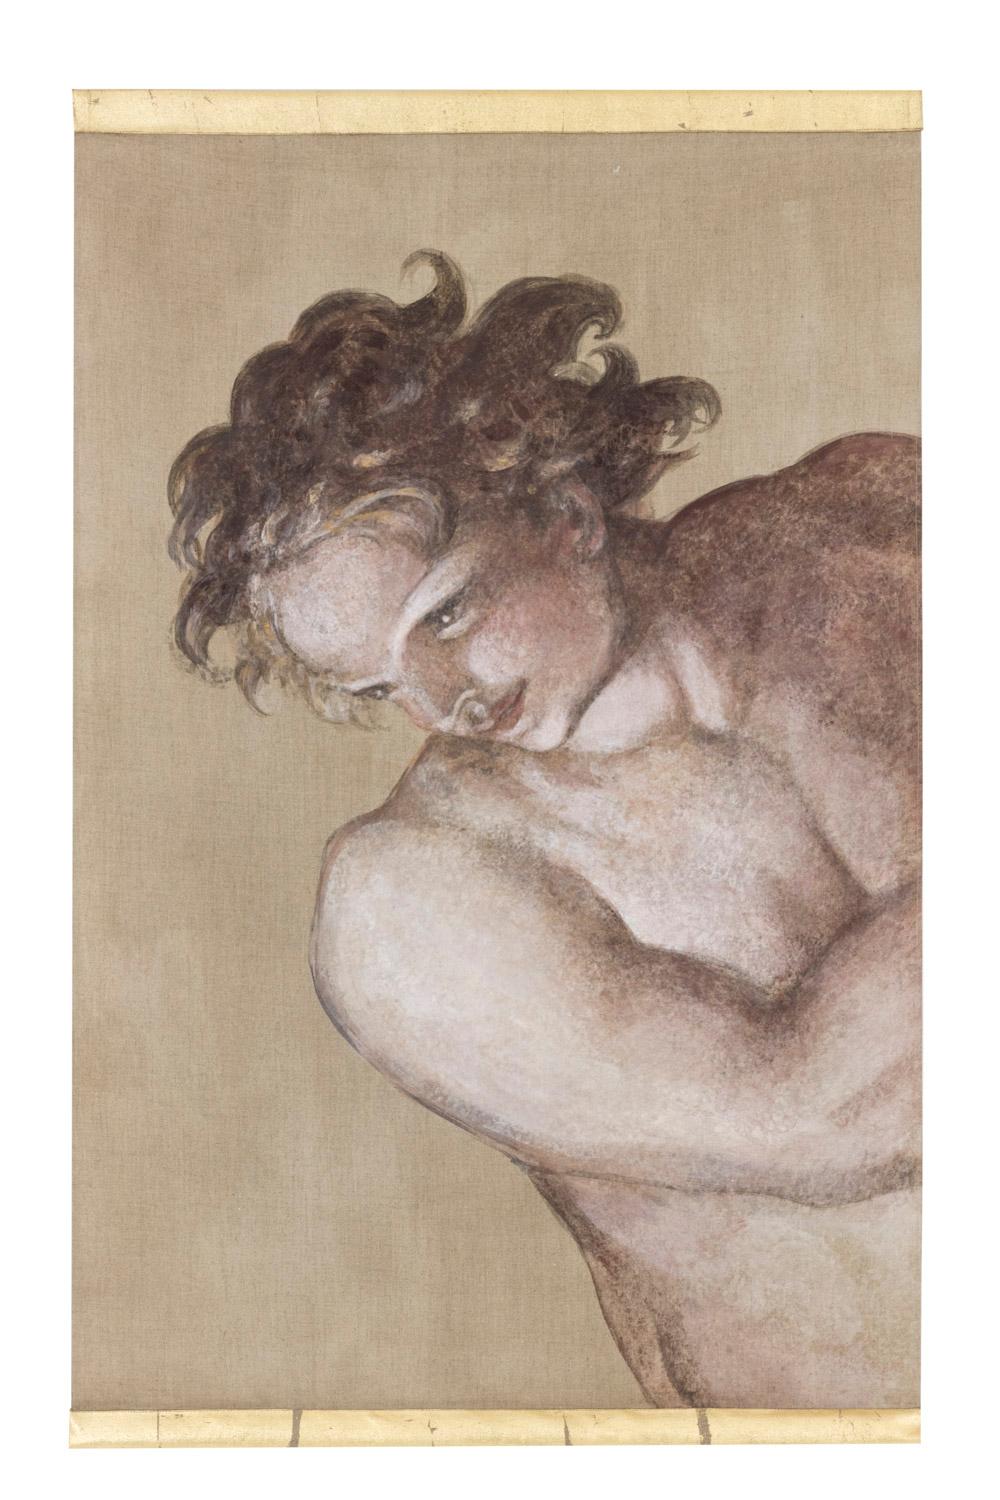 Gemalte Leinwand, die einen Mann im Stil Michelangelos darstellt, Seitenansicht. Er ist nackt und hat Muskeln, die an ein Gemälde aus der italienischen Renaissance erinnern, er hat lockiges Haar und dreht den Kopf nach links unten. Brauner